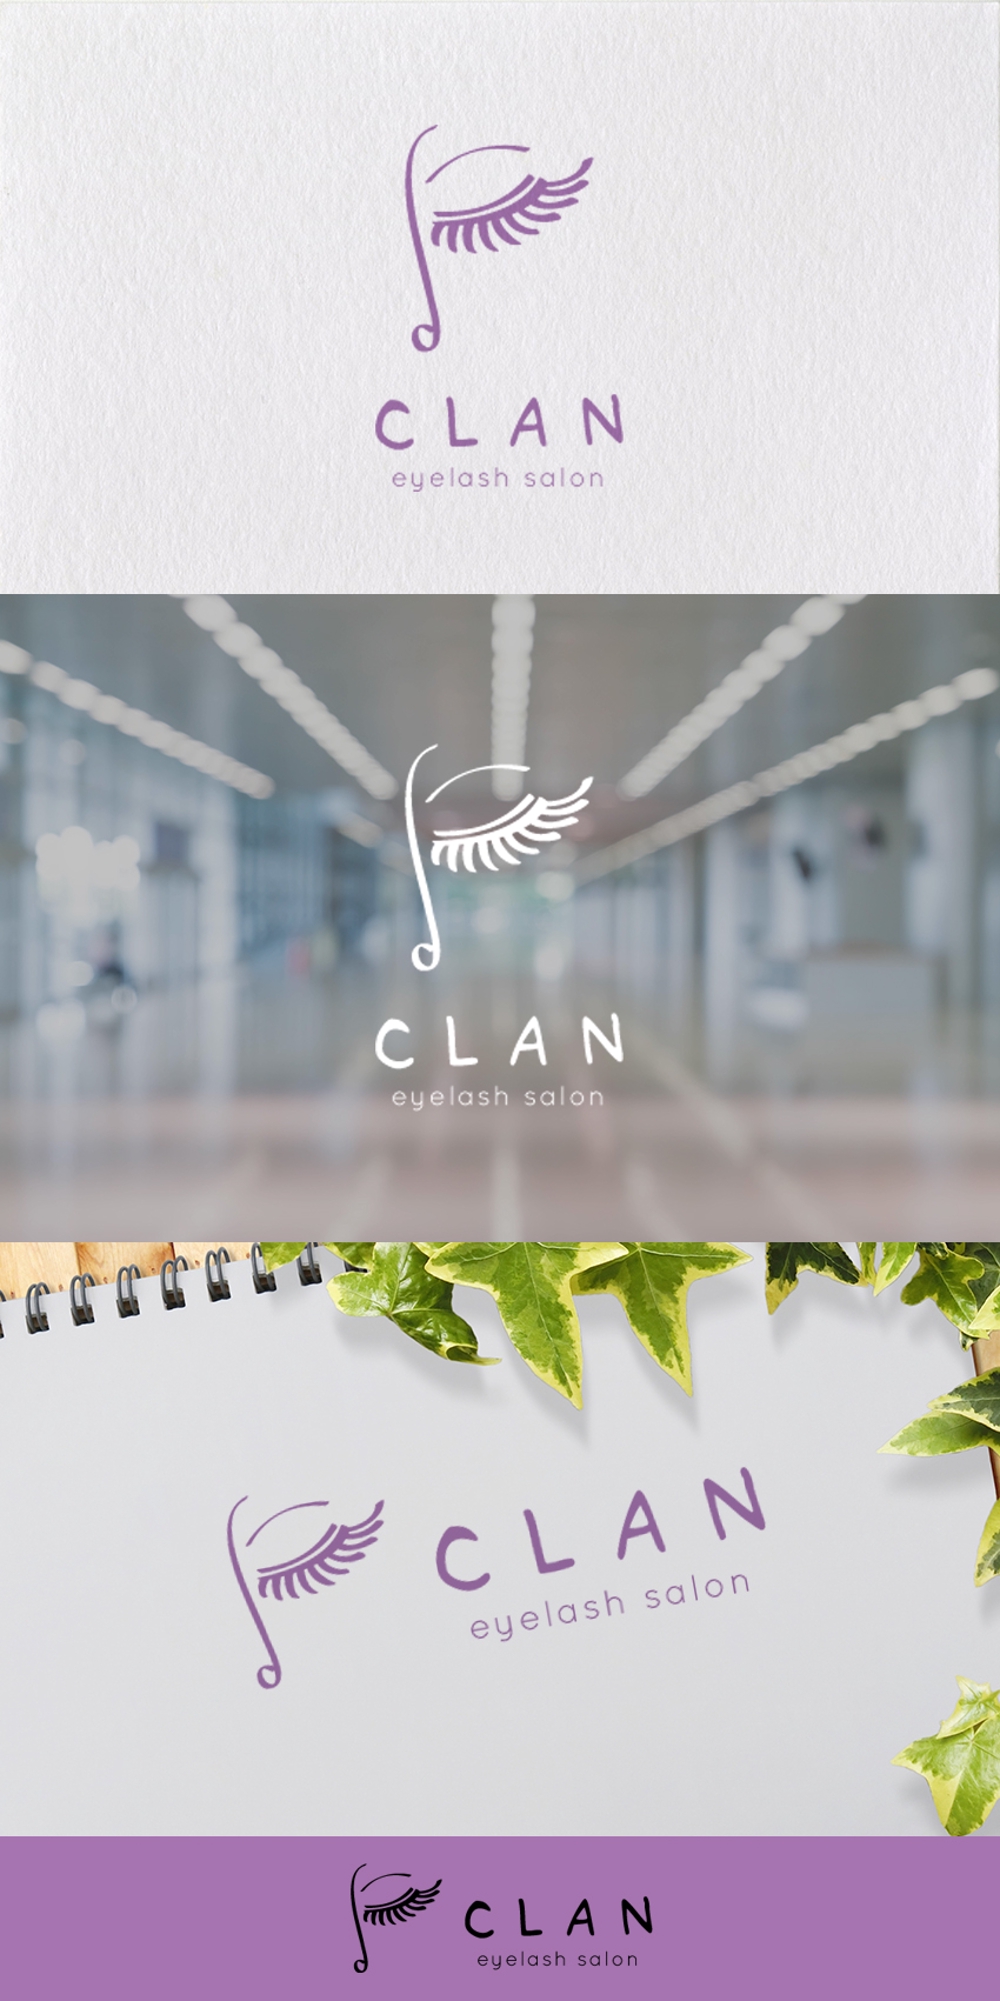 アイラッシュサロン ｢CLAN｣のロゴ